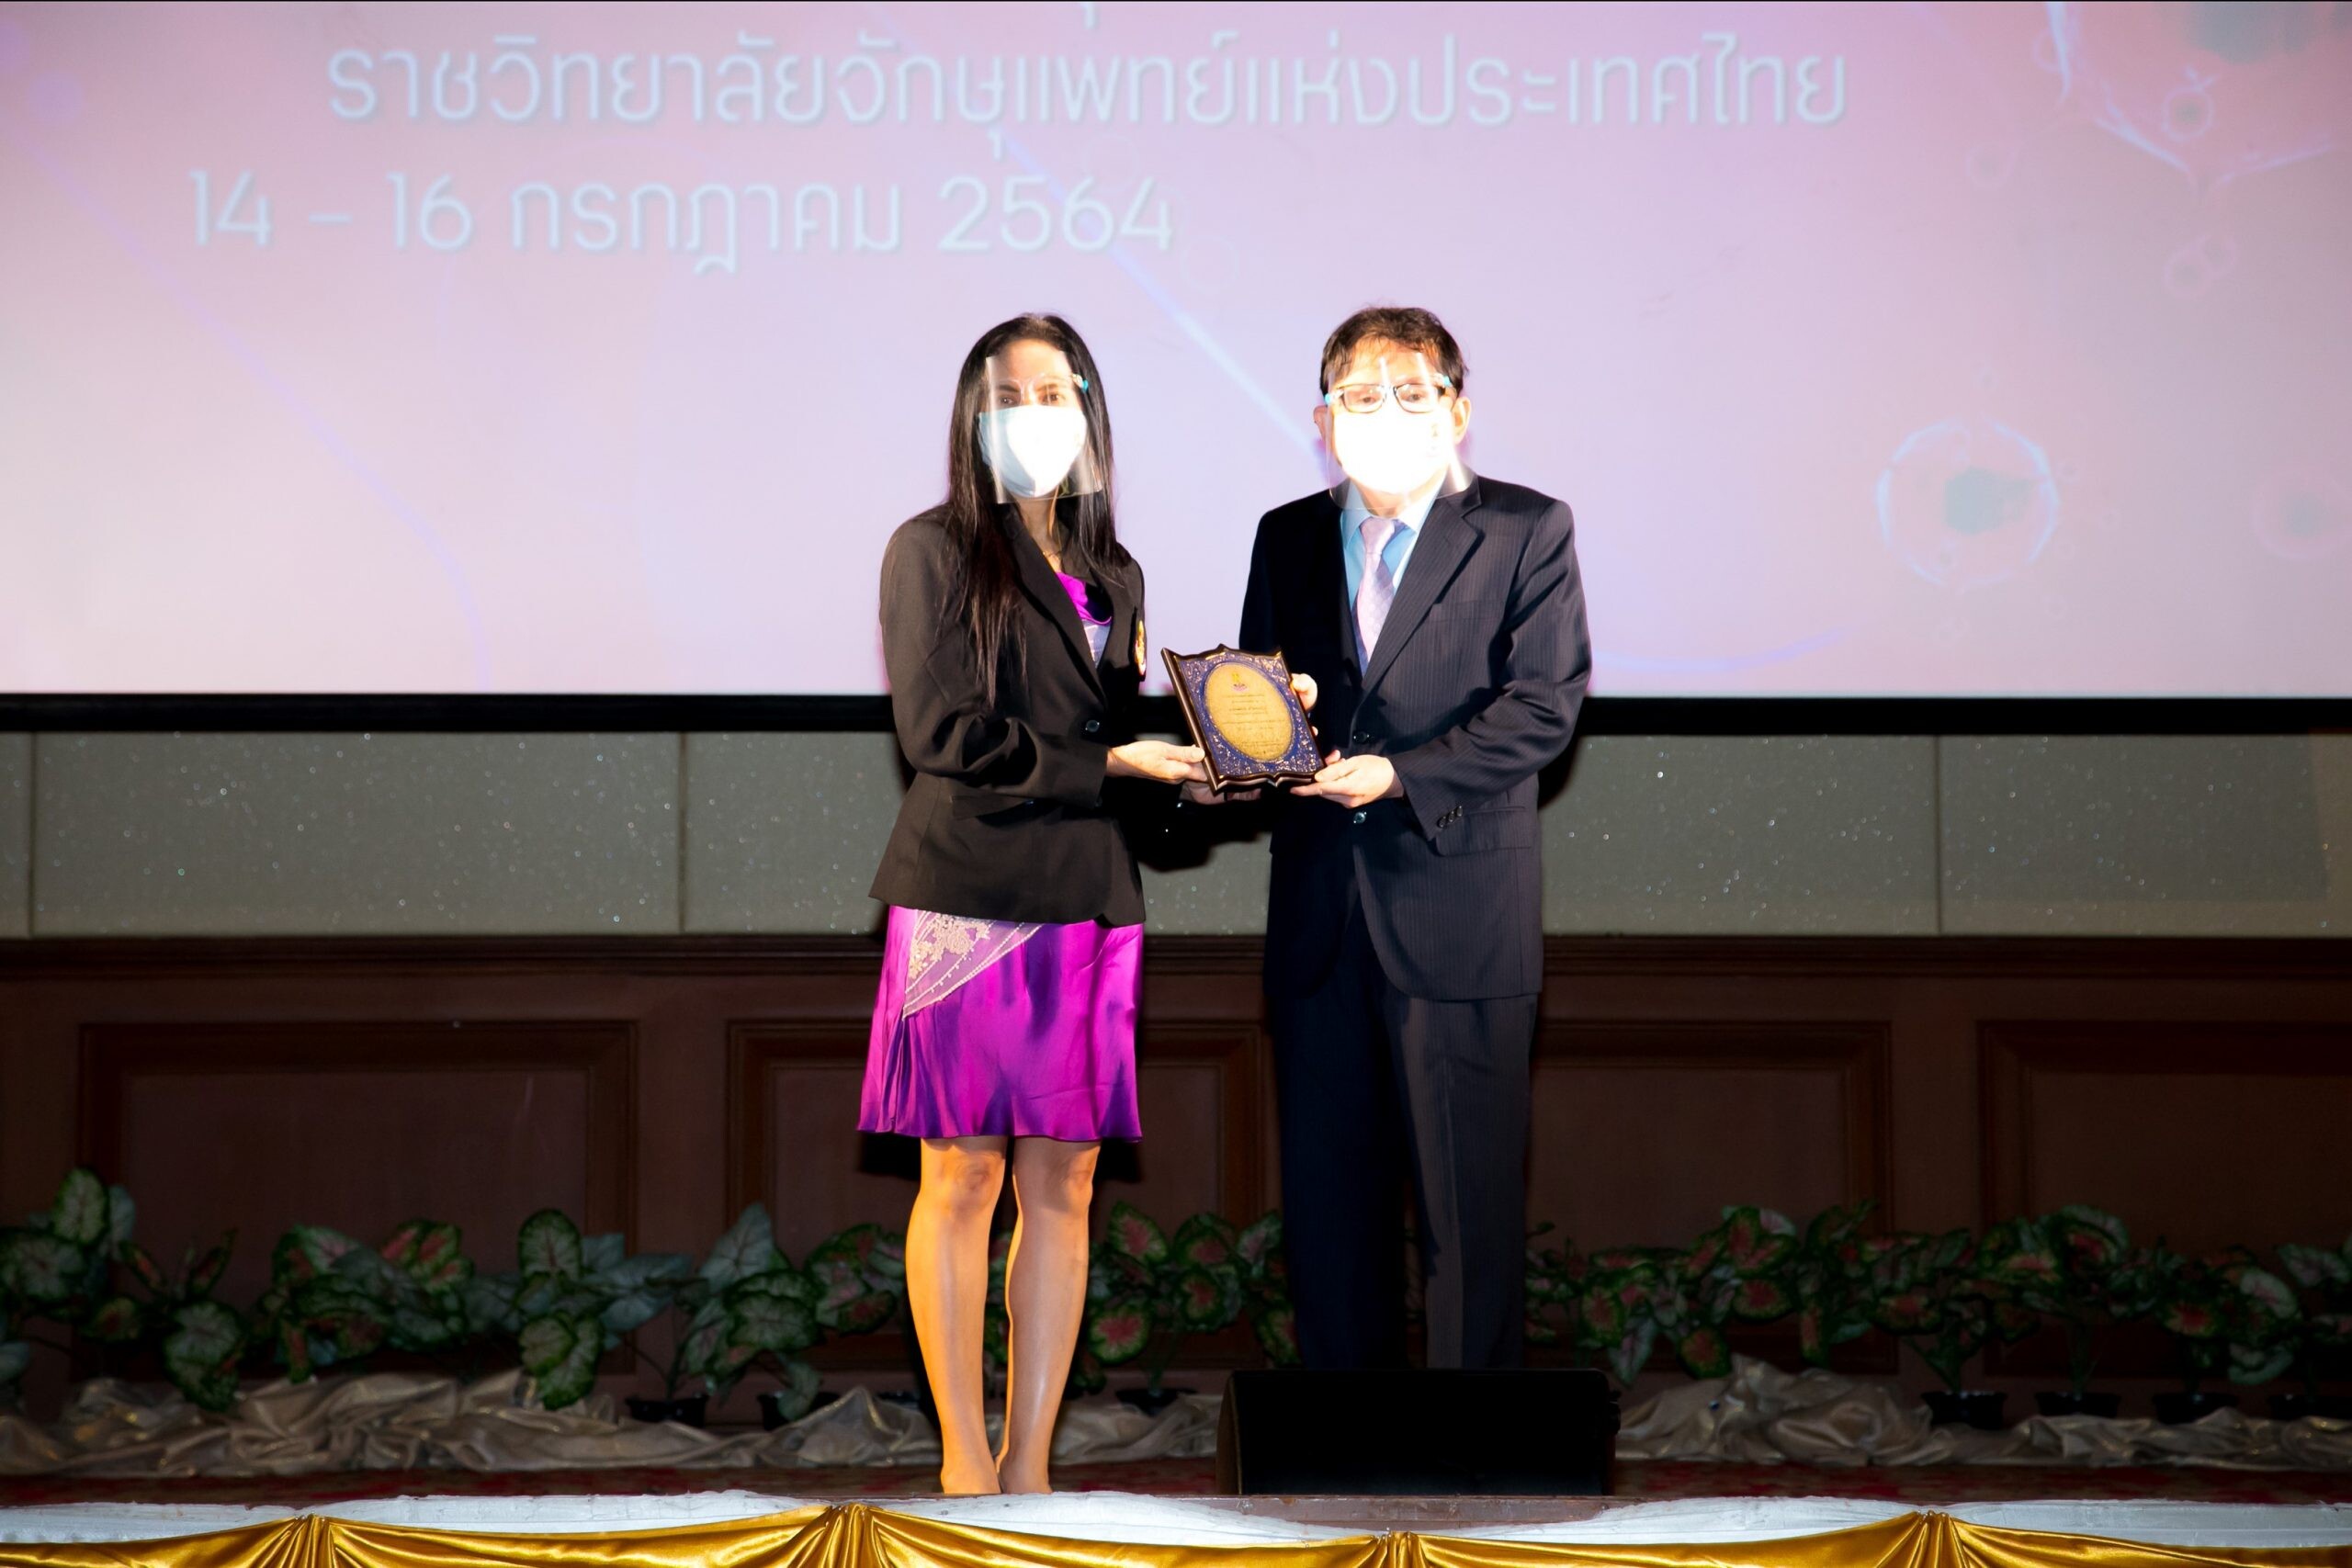 "แว่นท็อปเจริญ" รับโล่เกียรติคุณ "ผู้ทำประโยชน์ให้แก่วงการแพทย์ทางจักษุ" จากราชวิทยาลัยจักษุแพทย์แห่งประเทศไทย